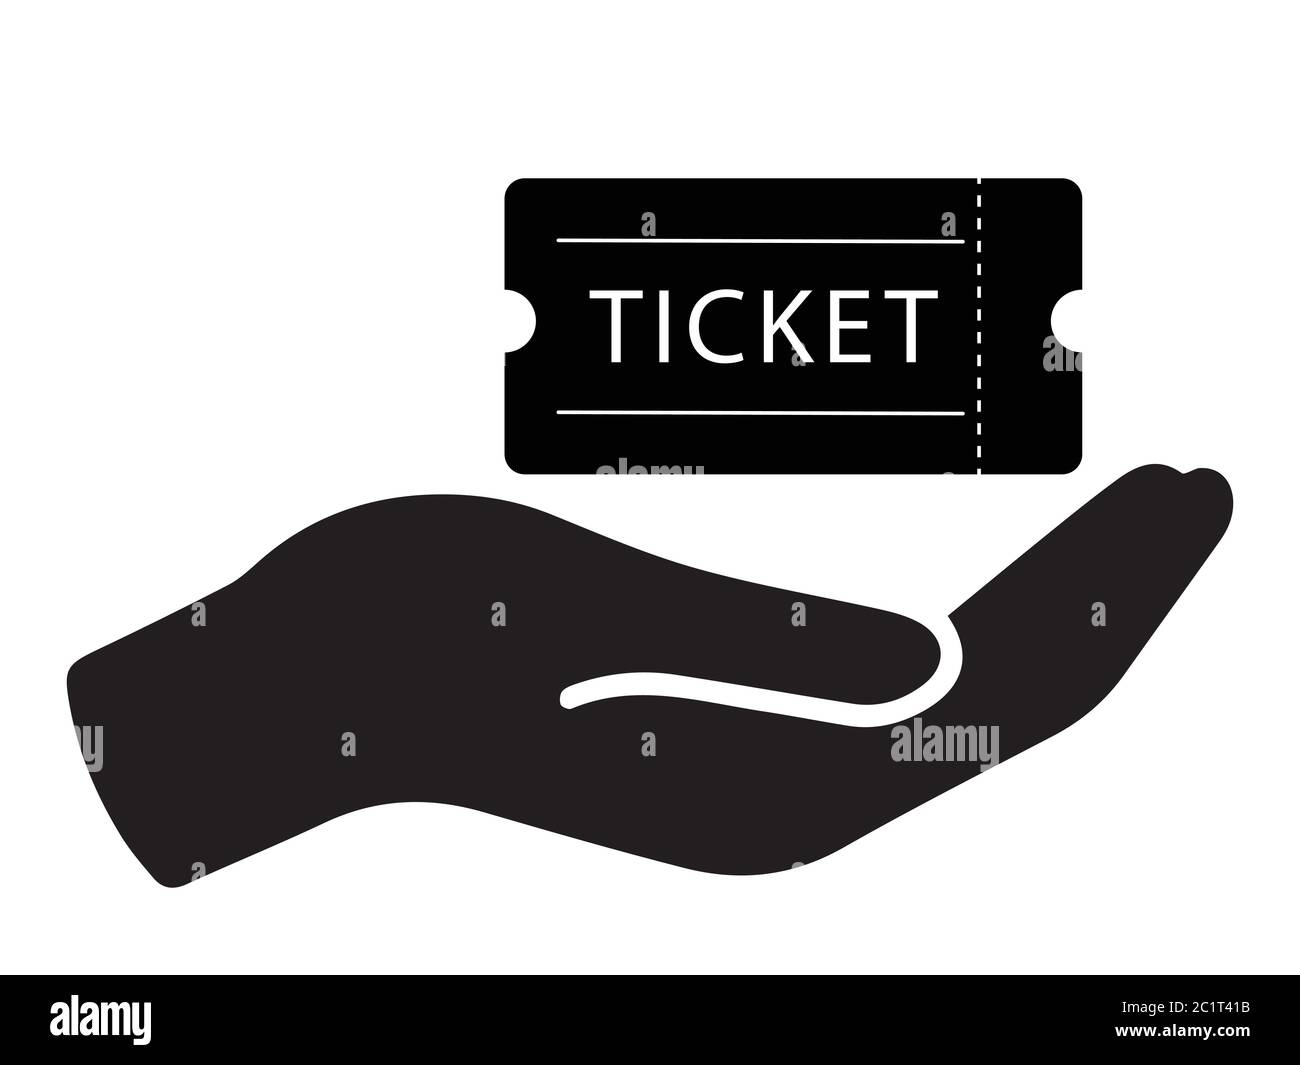 Apri Palm che consegna il biglietto d'ingresso per il ritiro. Illustrazione nera isolata su sfondo bianco. Vettore EPS Illustrazione Vettoriale